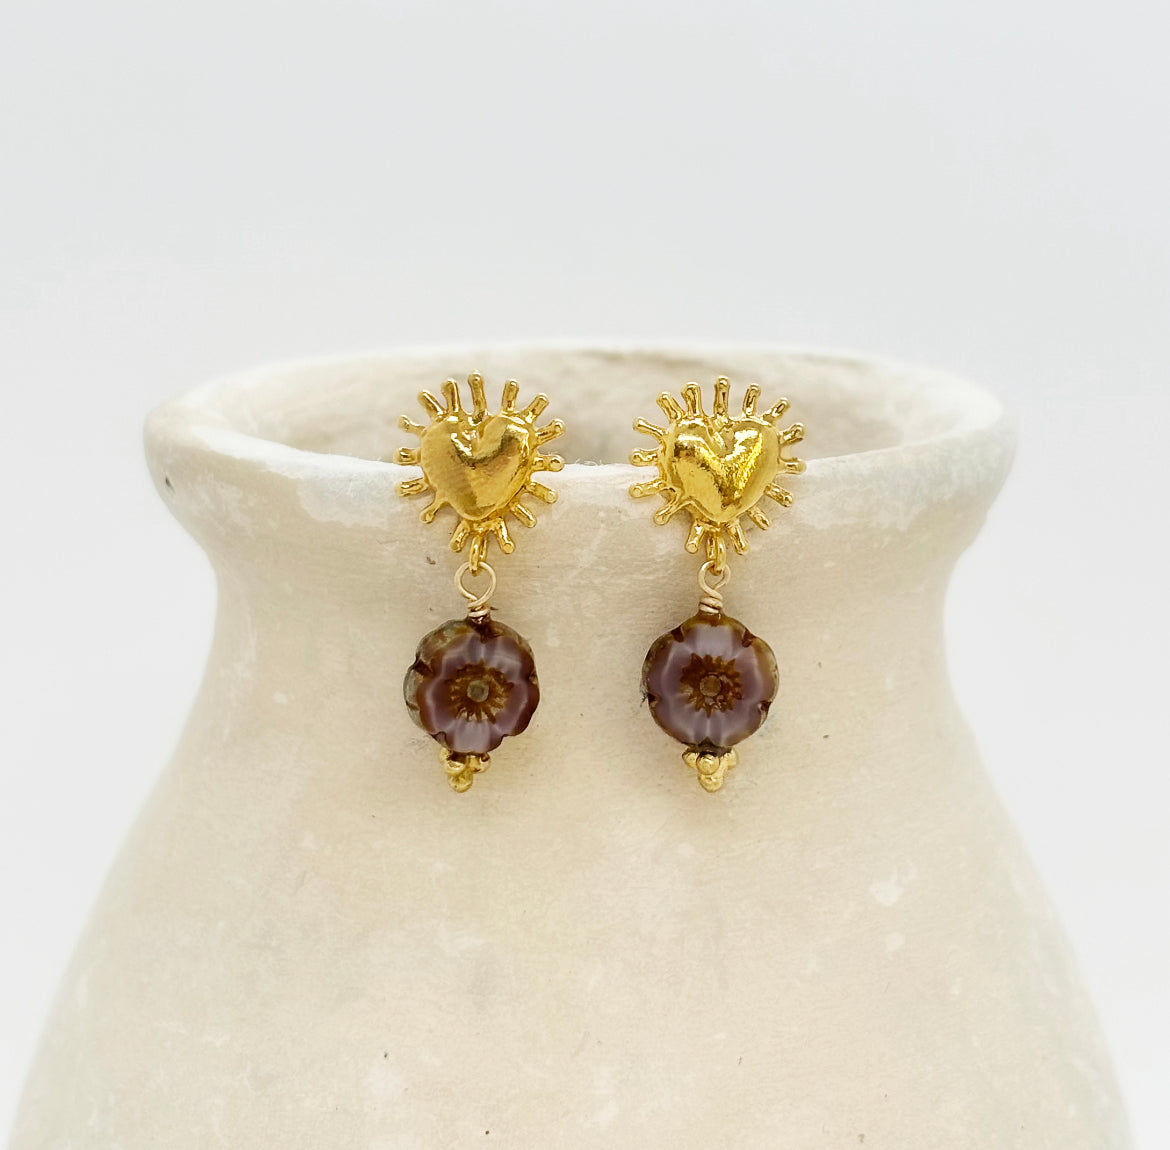 Bahia earrings